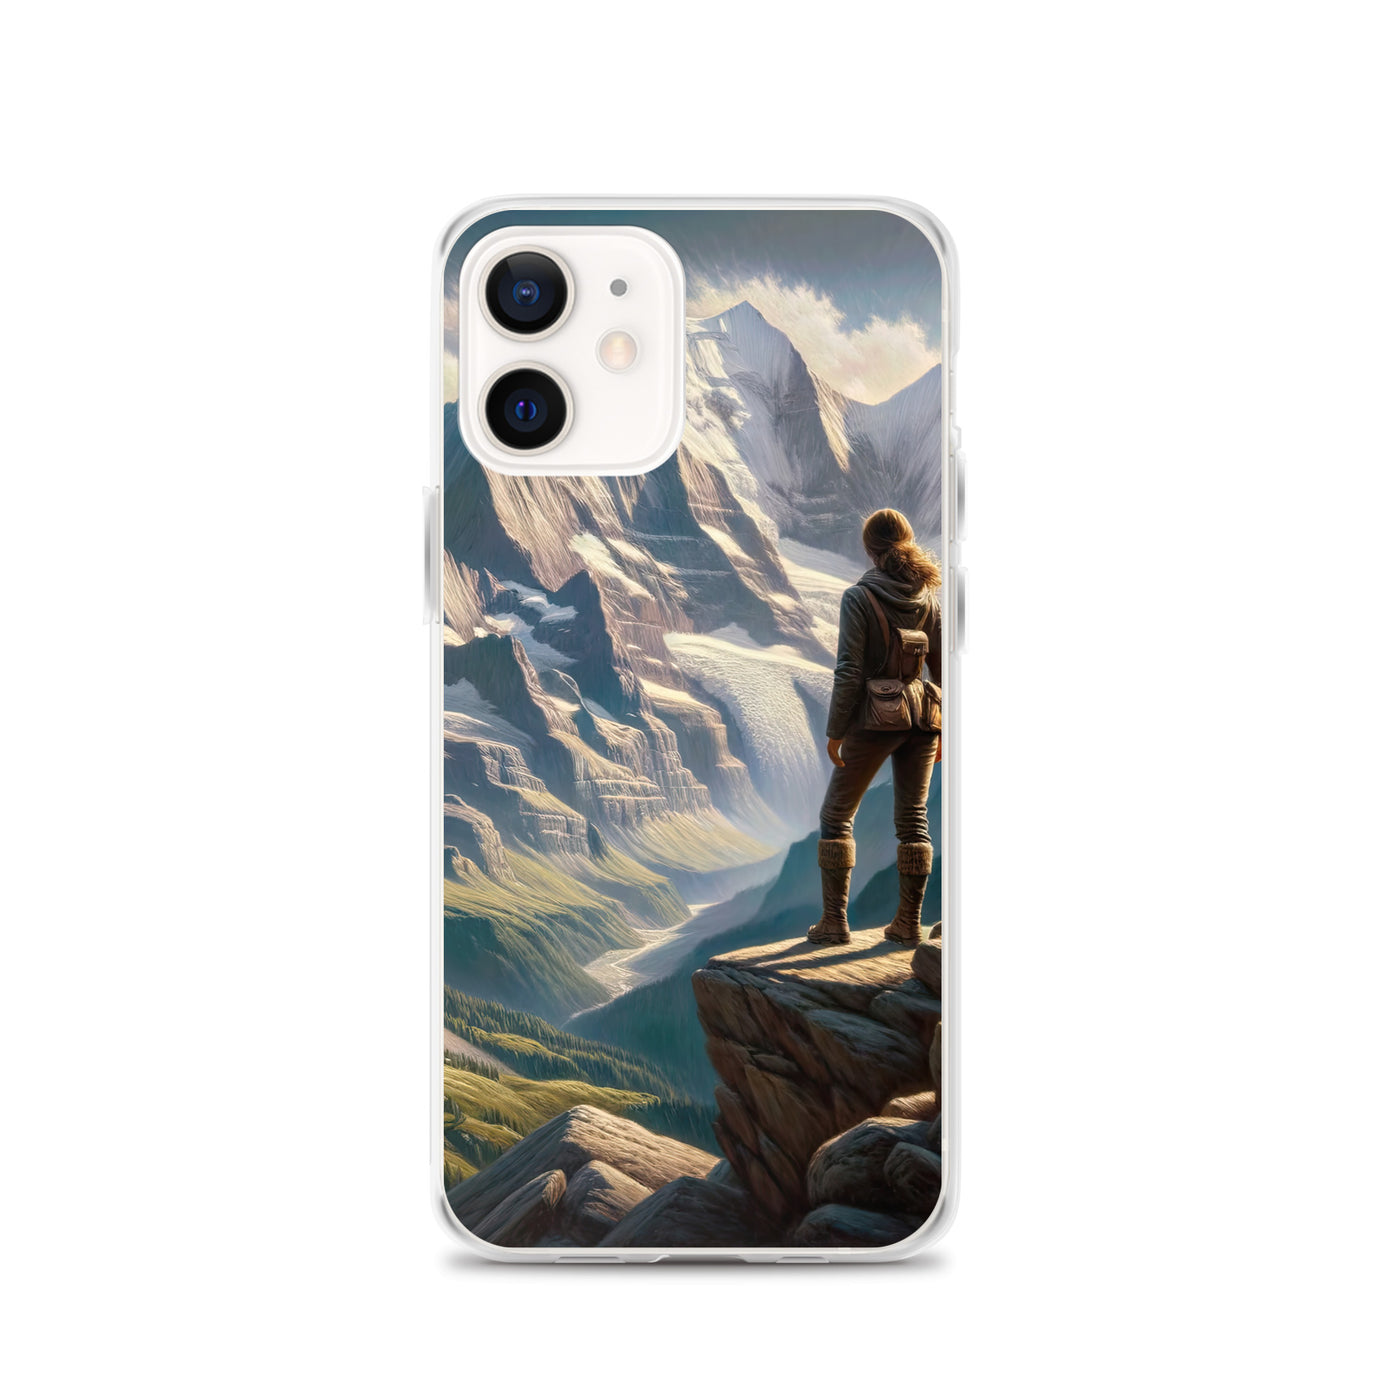 Ölgemälde der Alpengipfel mit Schweizer Abenteurerin auf Felsvorsprung - iPhone Schutzhülle (durchsichtig) wandern xxx yyy zzz iPhone 12